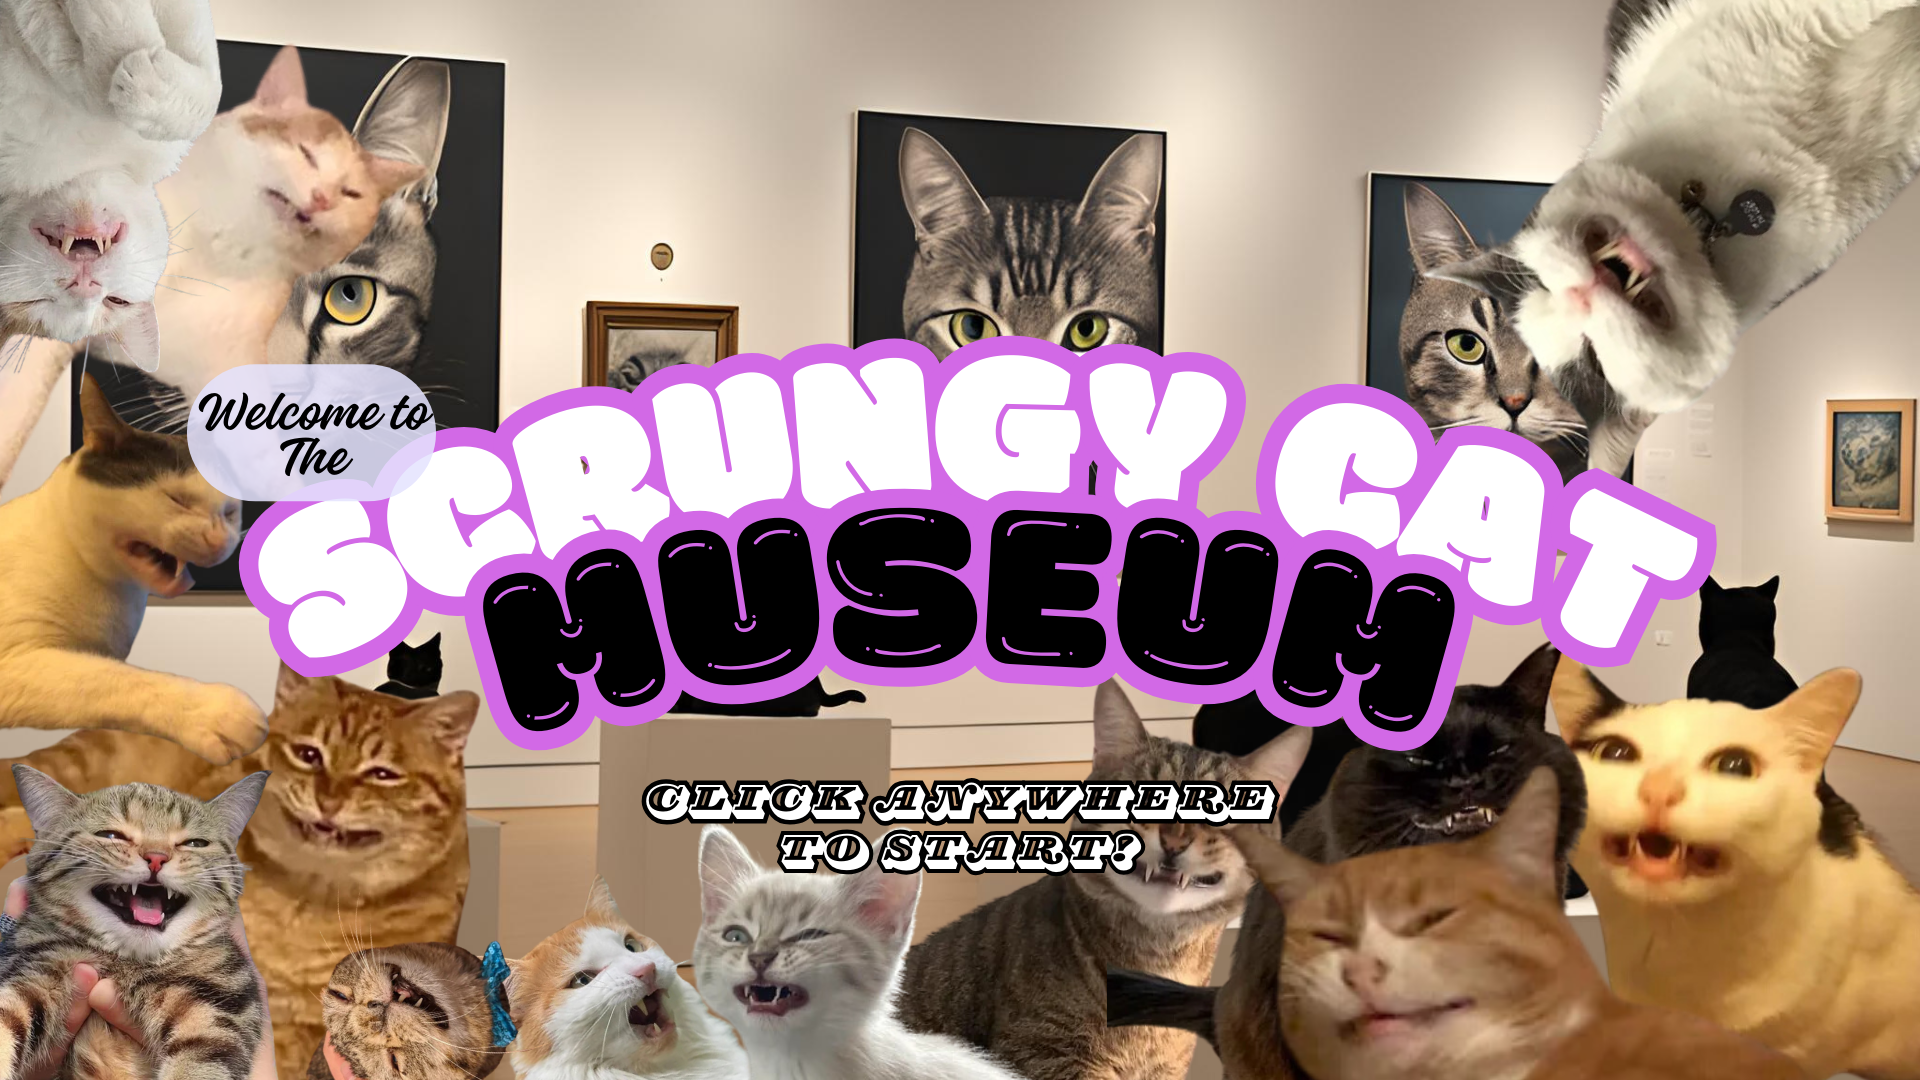 Scrungy Cat Museum v4